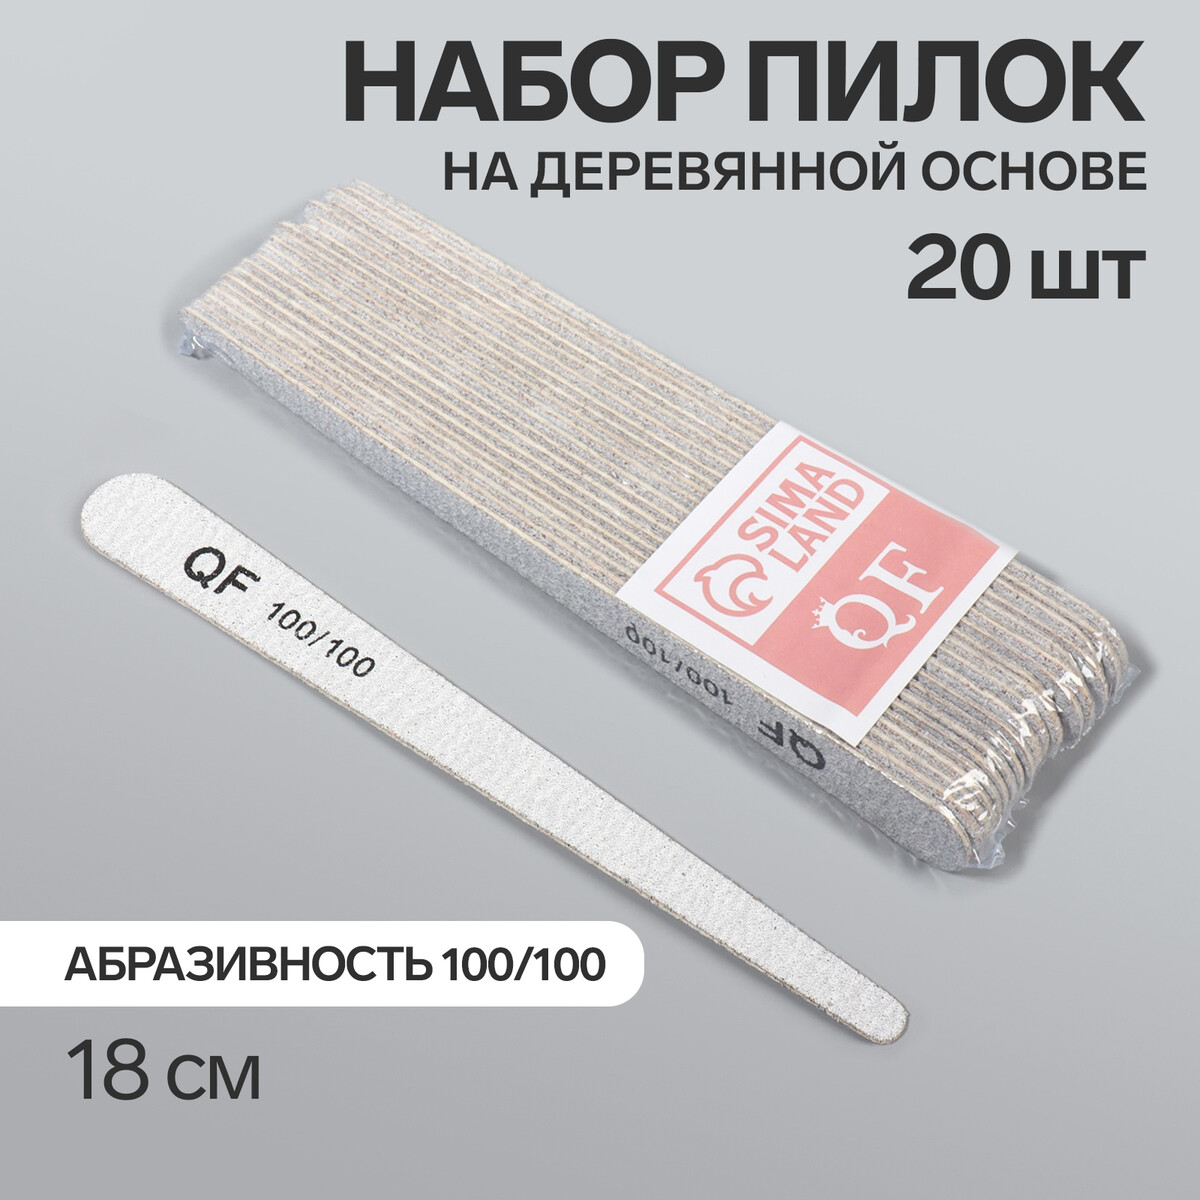 Пилка-наждак, набор 20 шт, деревянная основа, абразивность 100/100, 18 см, цвет серый основа и сменные файлы для пилки 18 см 10 шт абразивность 100